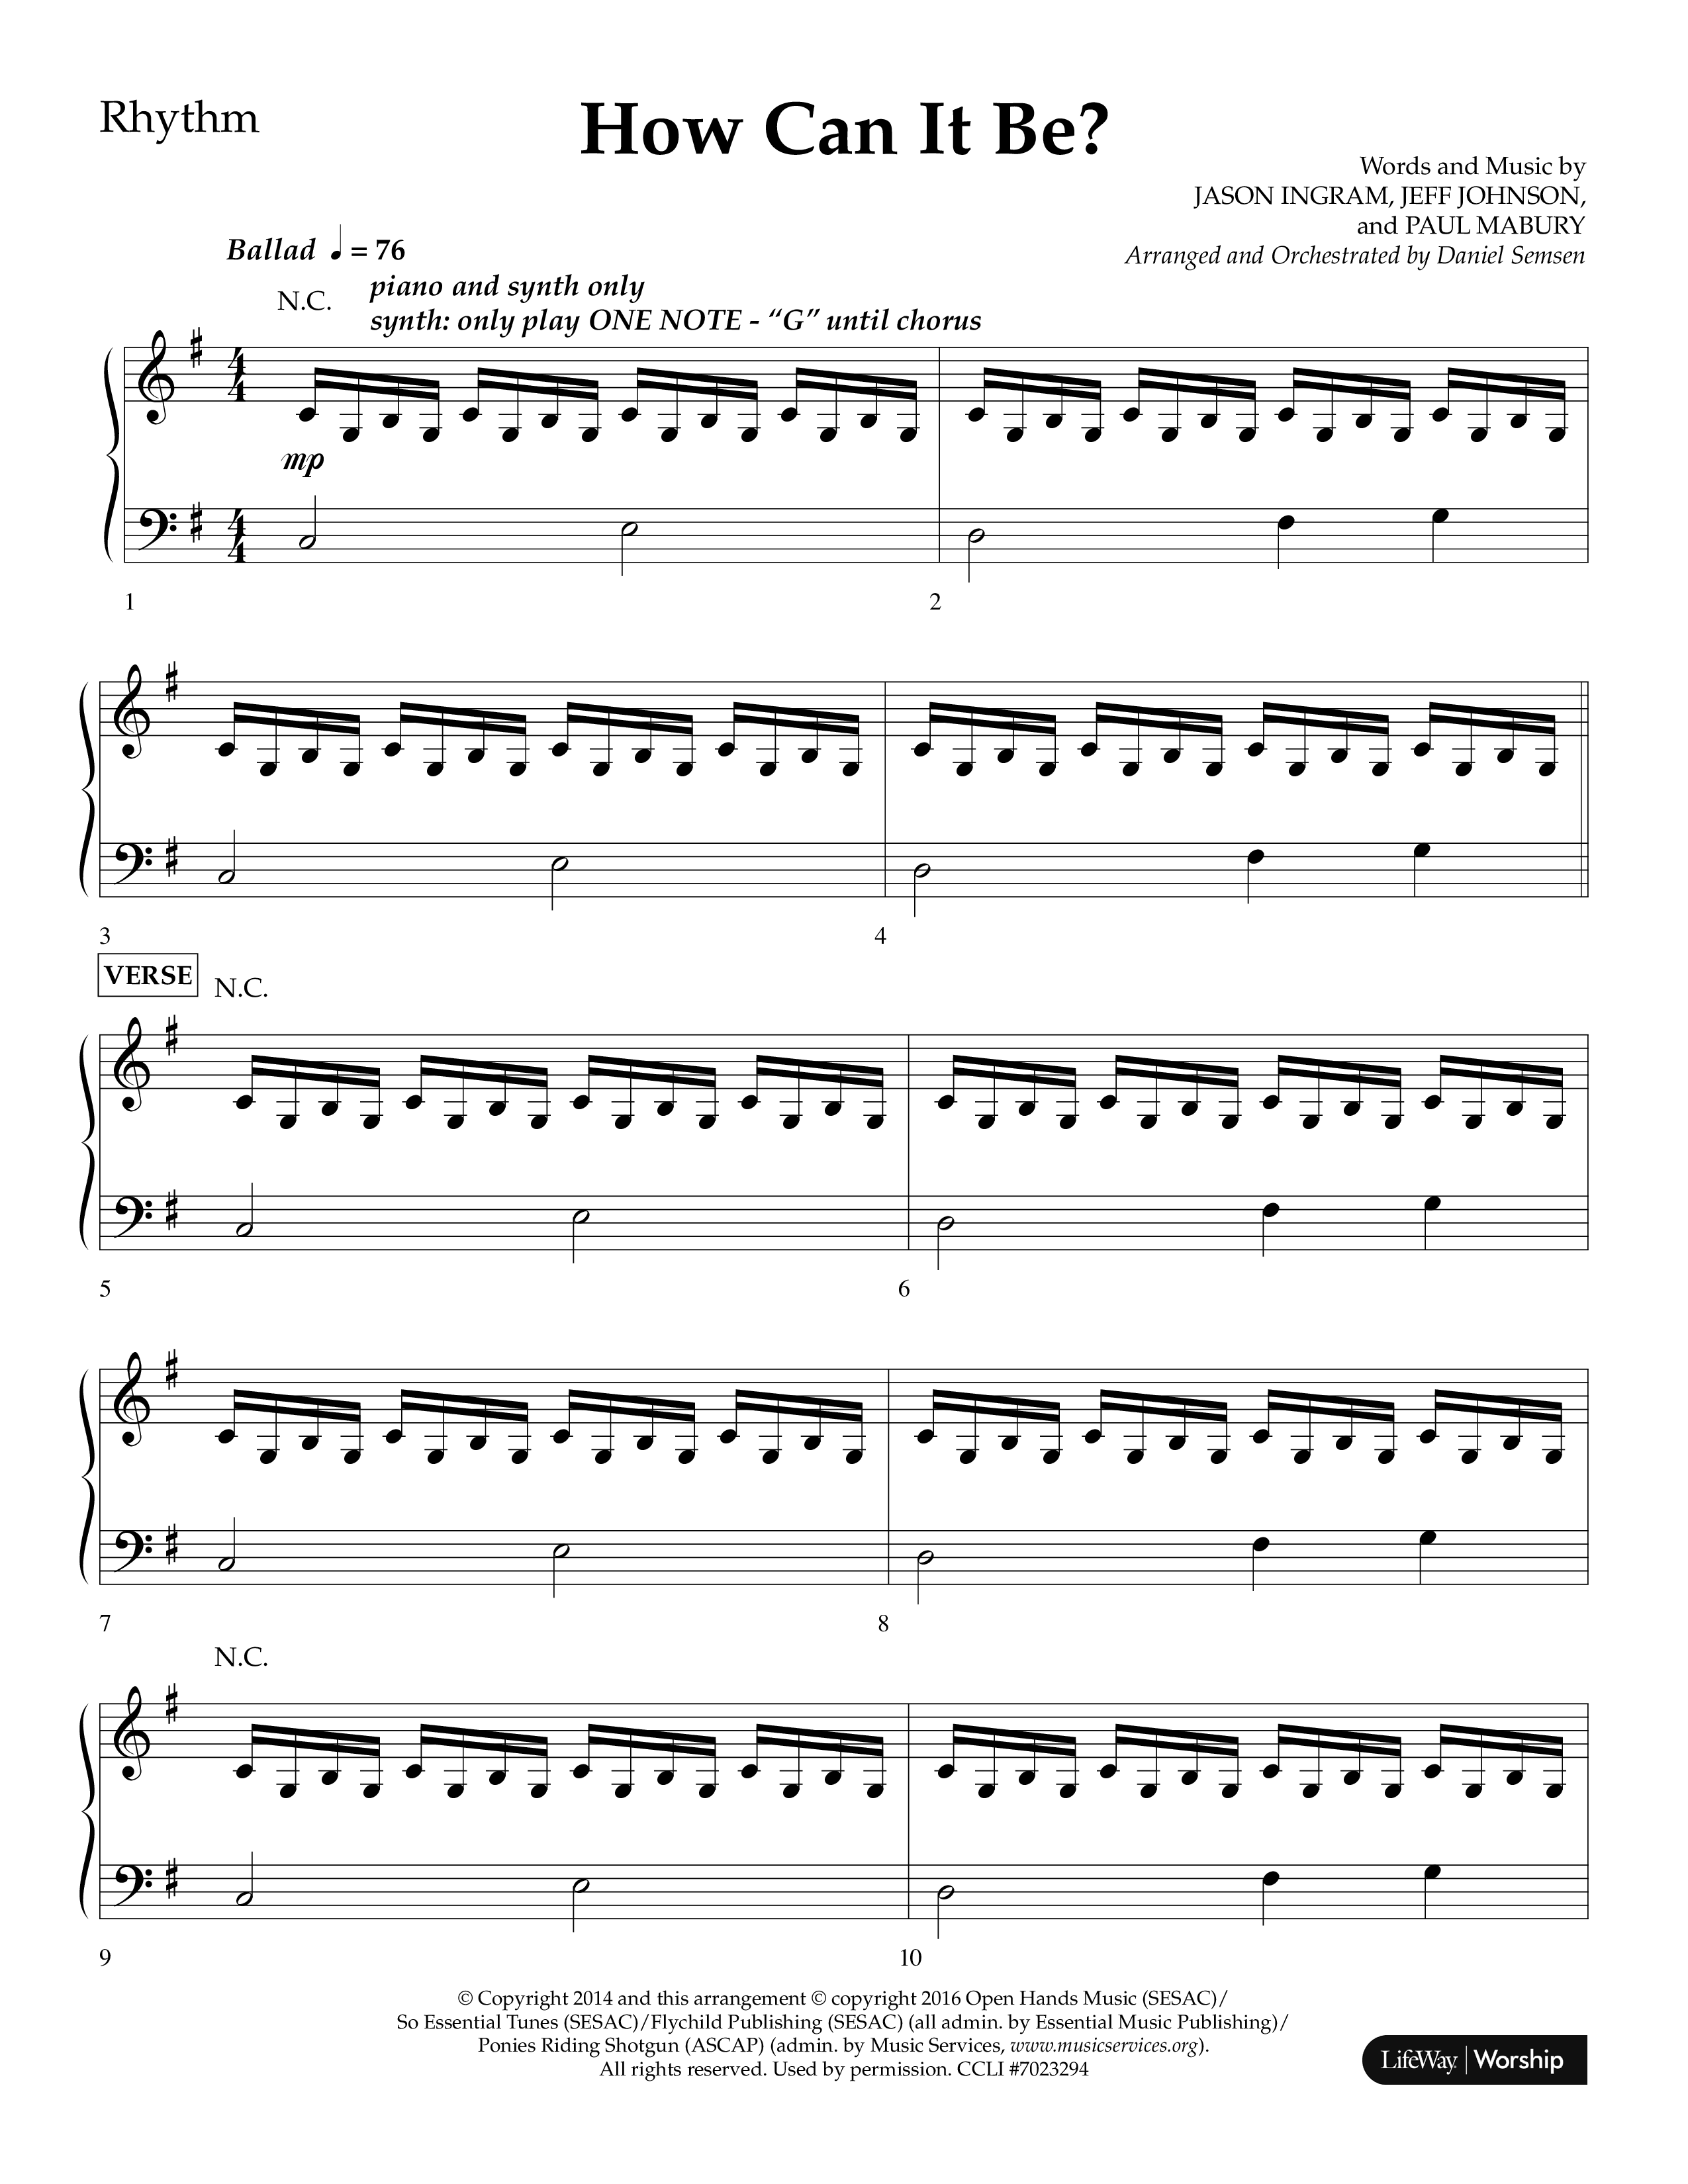 How Can It Be (Choral Anthem SATB) Lead Melody & Rhythm (Lifeway Choral / Arr. Daniel Semsen)